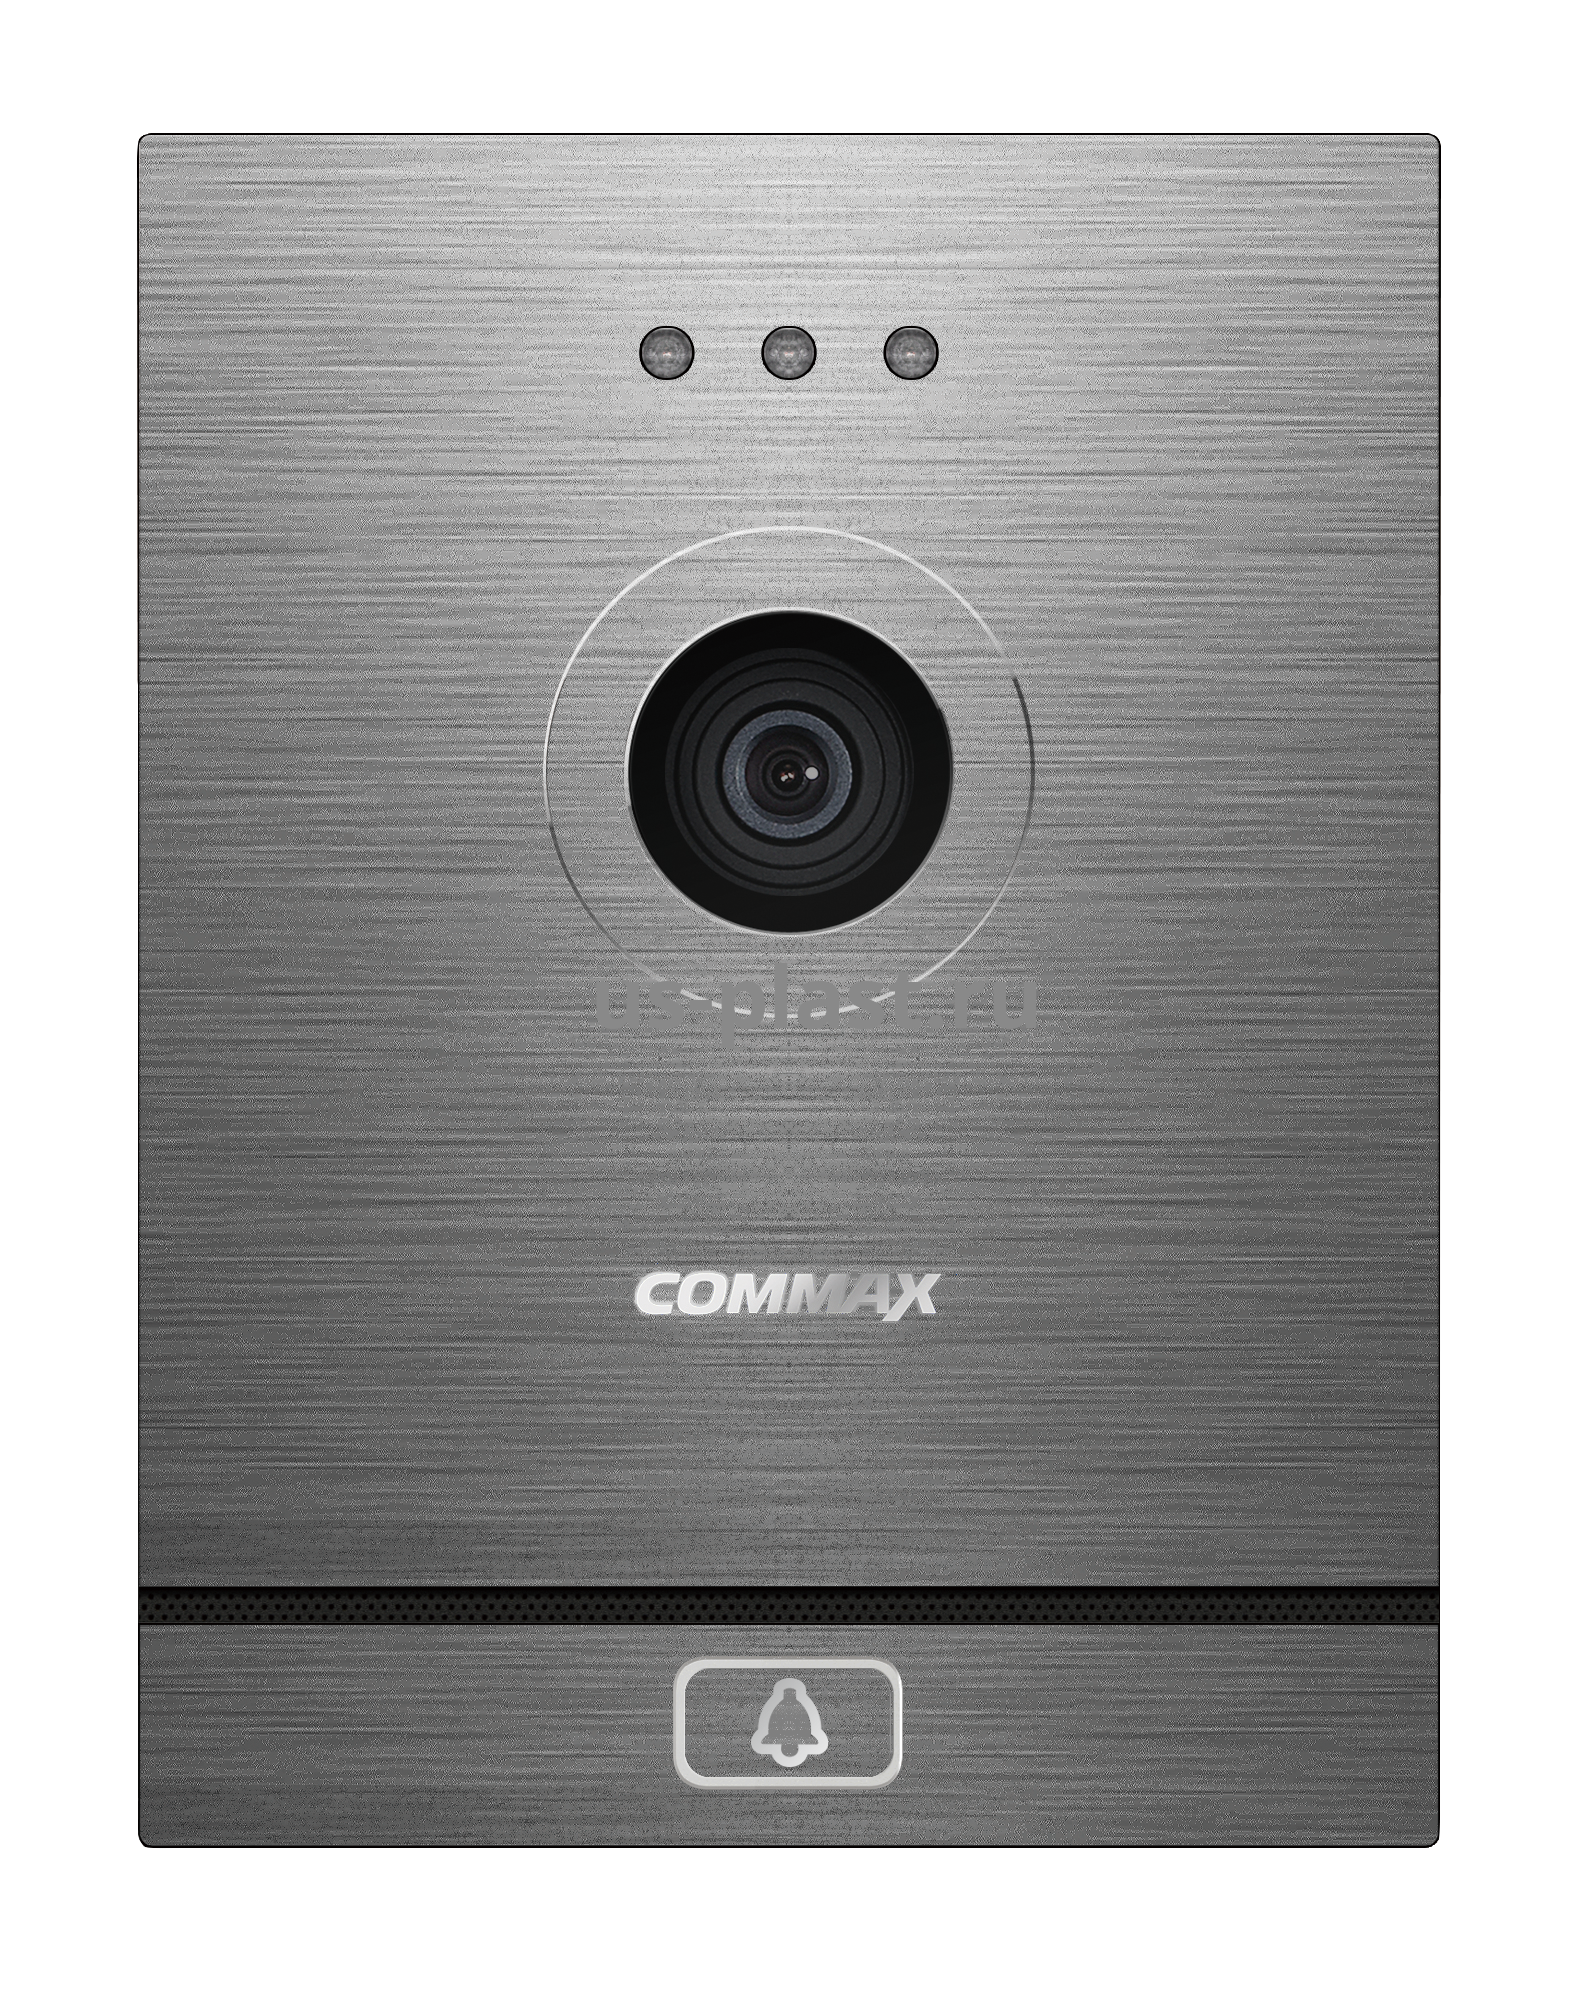 Commax CIOT-D21M (N) одноабонентская вызывная панель IP видеодомофона